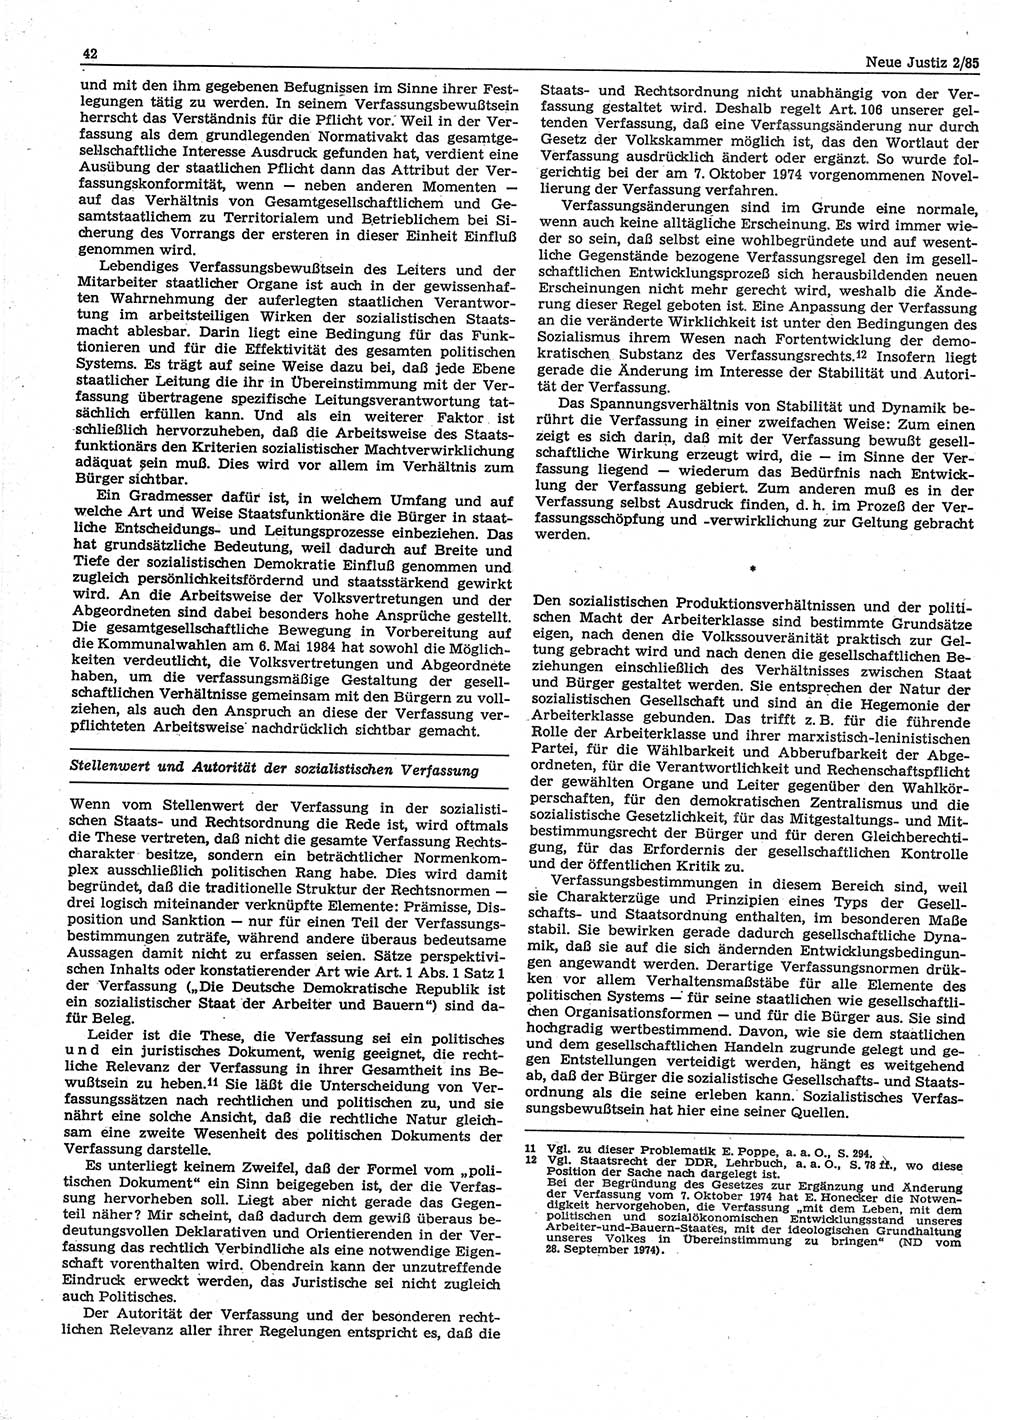 Neue Justiz (NJ), Zeitschrift für sozialistisches Recht und Gesetzlichkeit [Deutsche Demokratische Republik (DDR)], 39. Jahrgang 1985, Seite 42 (NJ DDR 1985, S. 42)